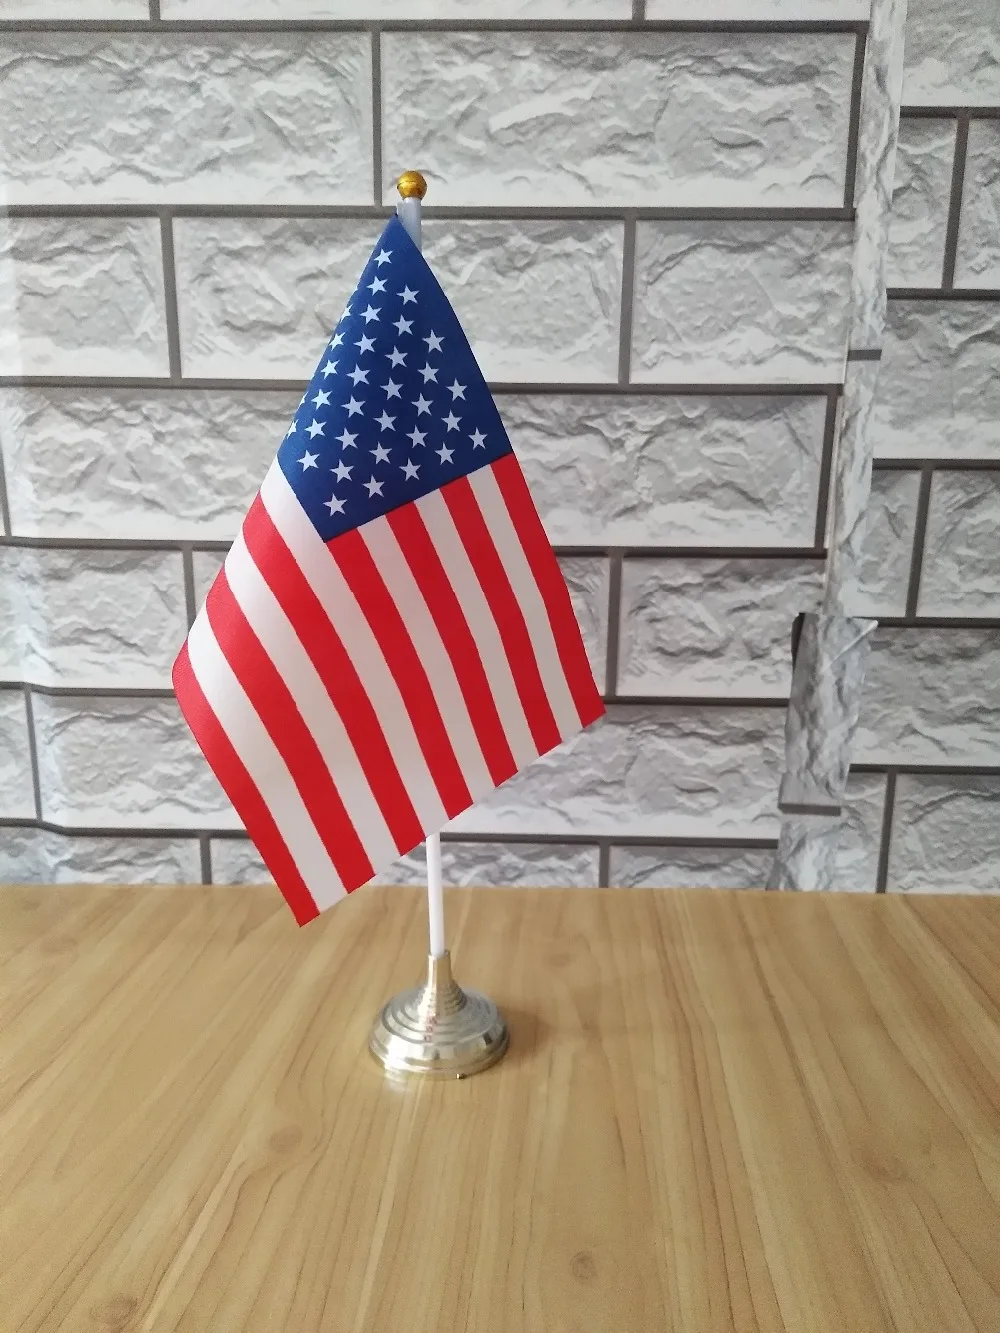 AZ FLAG Drapeau de Table USA 48 étoiles 21x14cm Etats-Unis 14 x 21 cm Petit Drapeaux DE Bureau américain